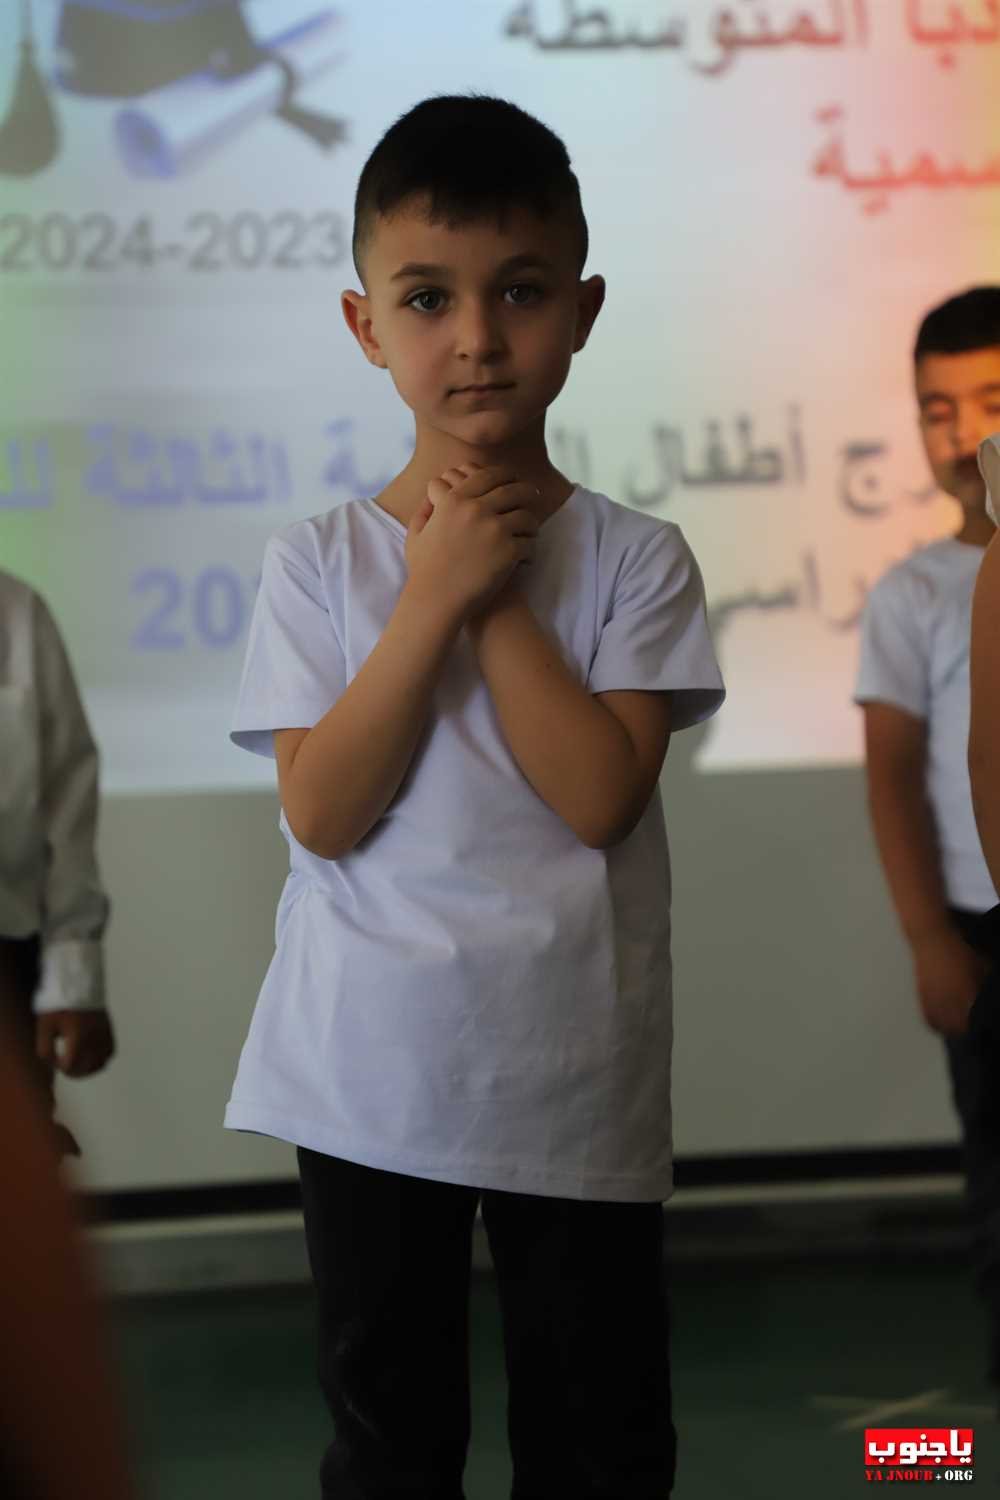 احتفال تربوي في مدرسة طيردبا المتوسطة الرسمية (100) صورة  تصوير : وسام حسن  الجزء الثاني من الصور 